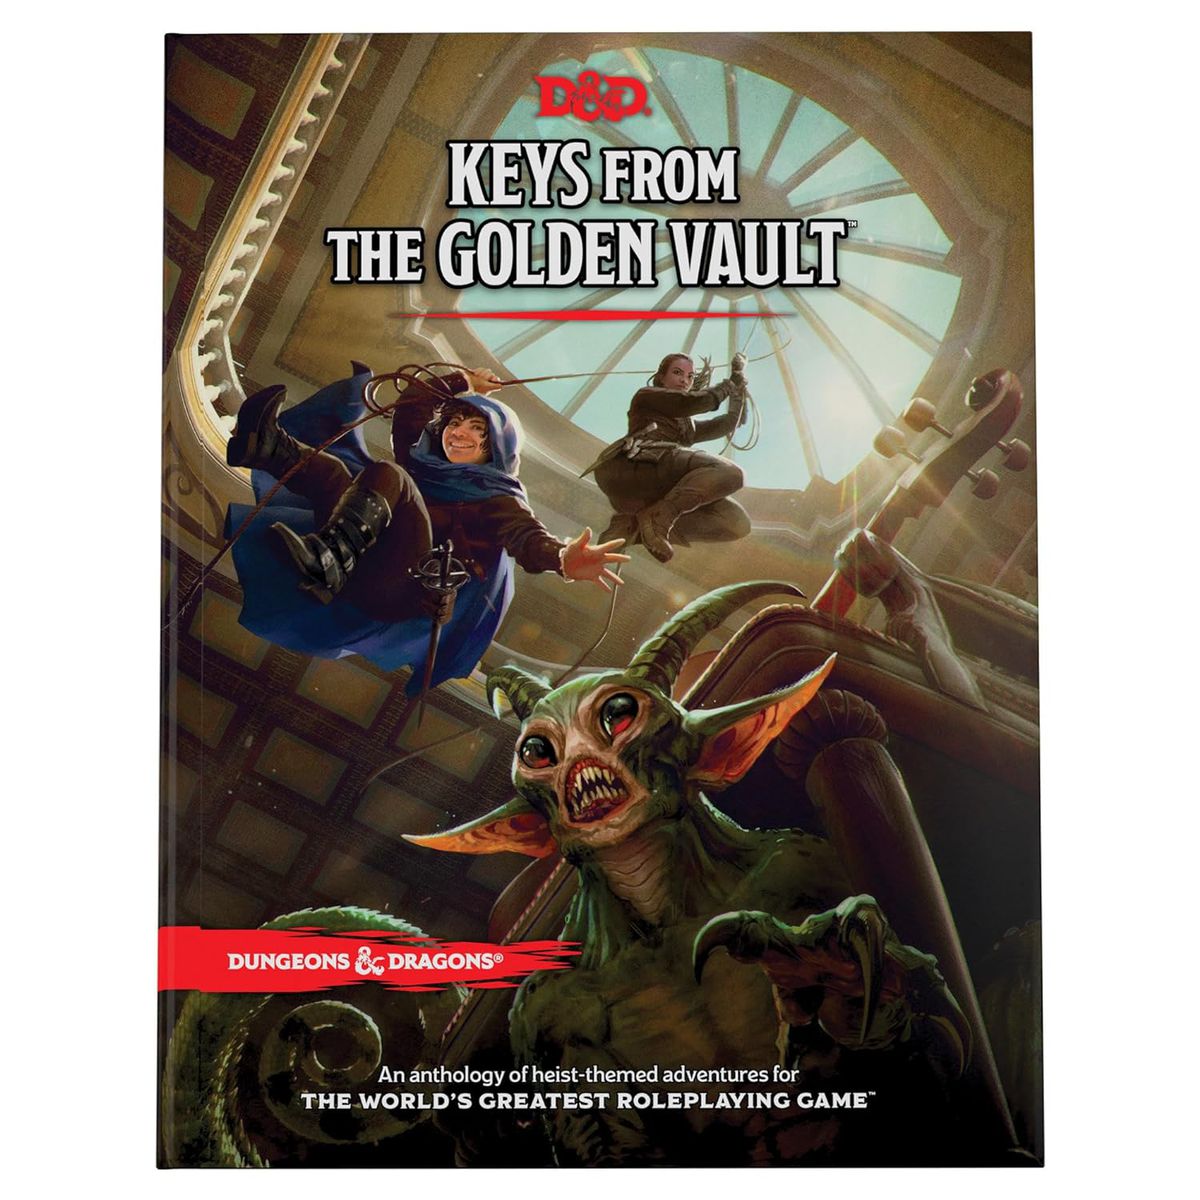 La couverture de la collection de braquages ​​​​D&D Keys from the Golden Vault, dans laquelle des membres du groupe tombent du plafond à l'aide de cordes vers une créature cachée sous une chaise.